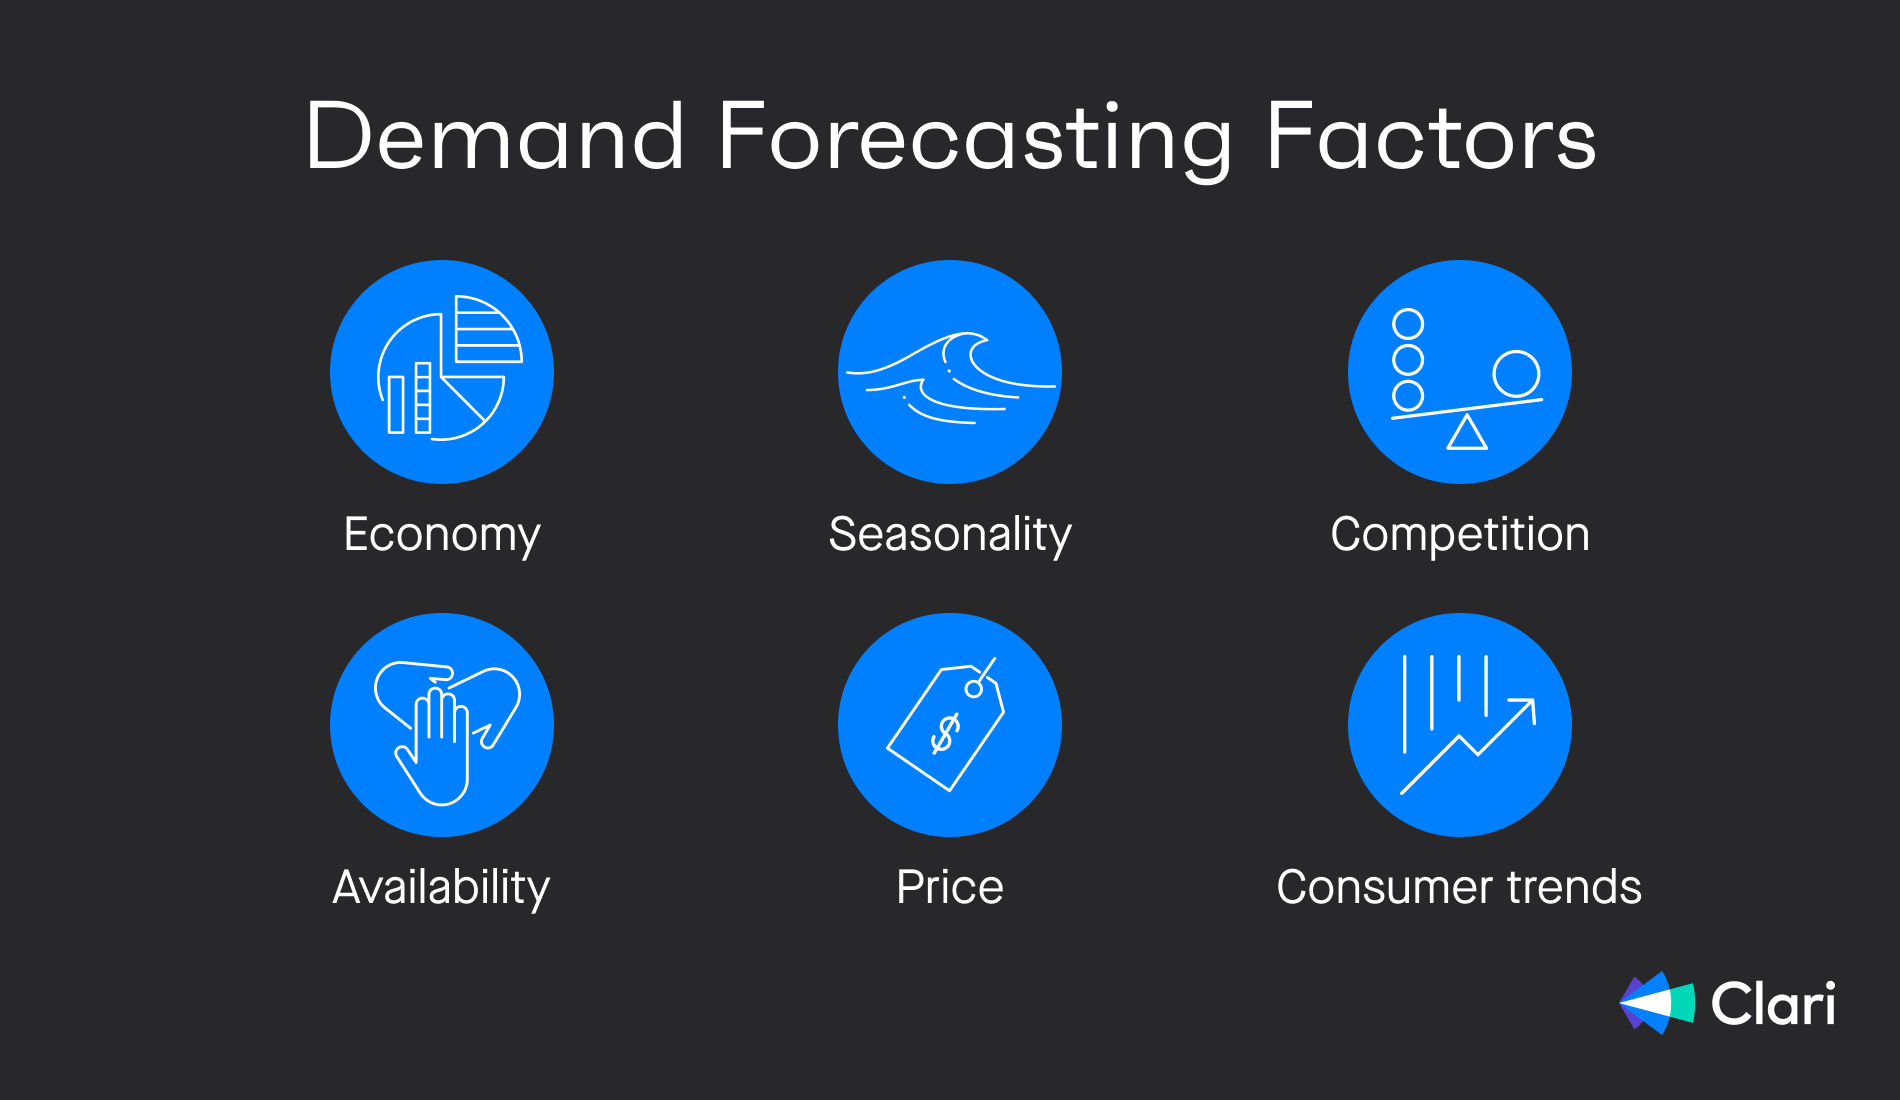 6 factors influencing demand forecasting